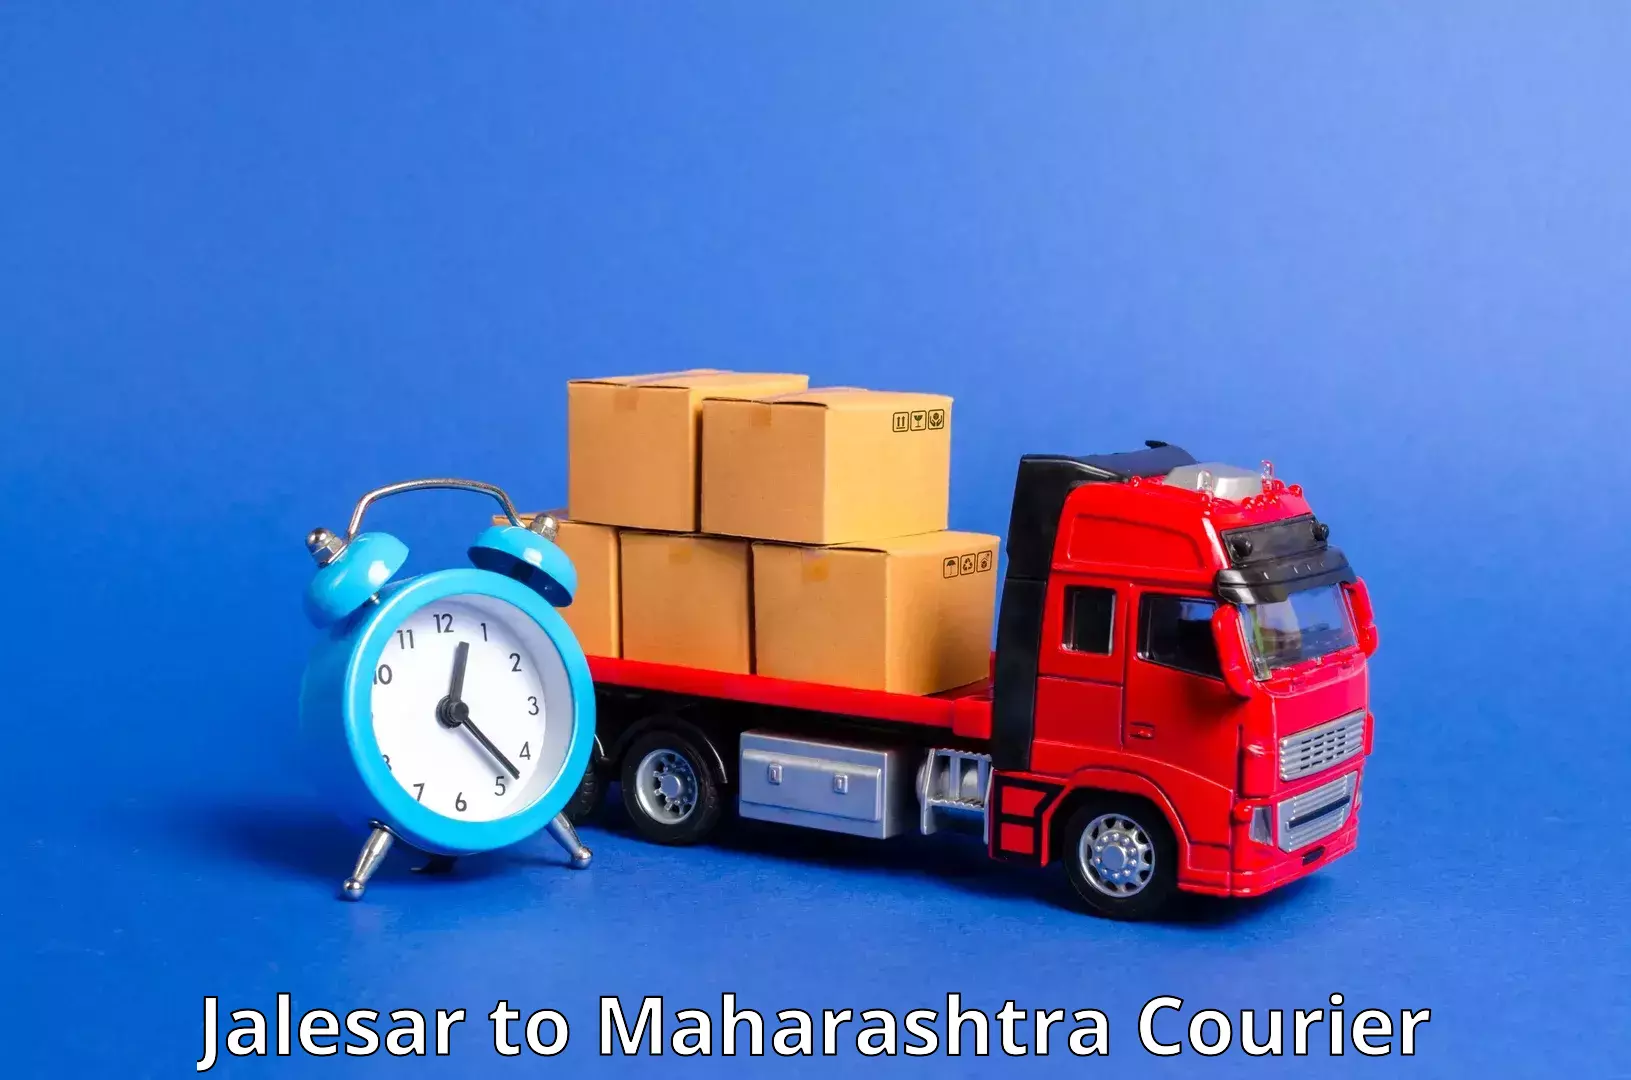 Express mail service Jalesar to Maharashtra